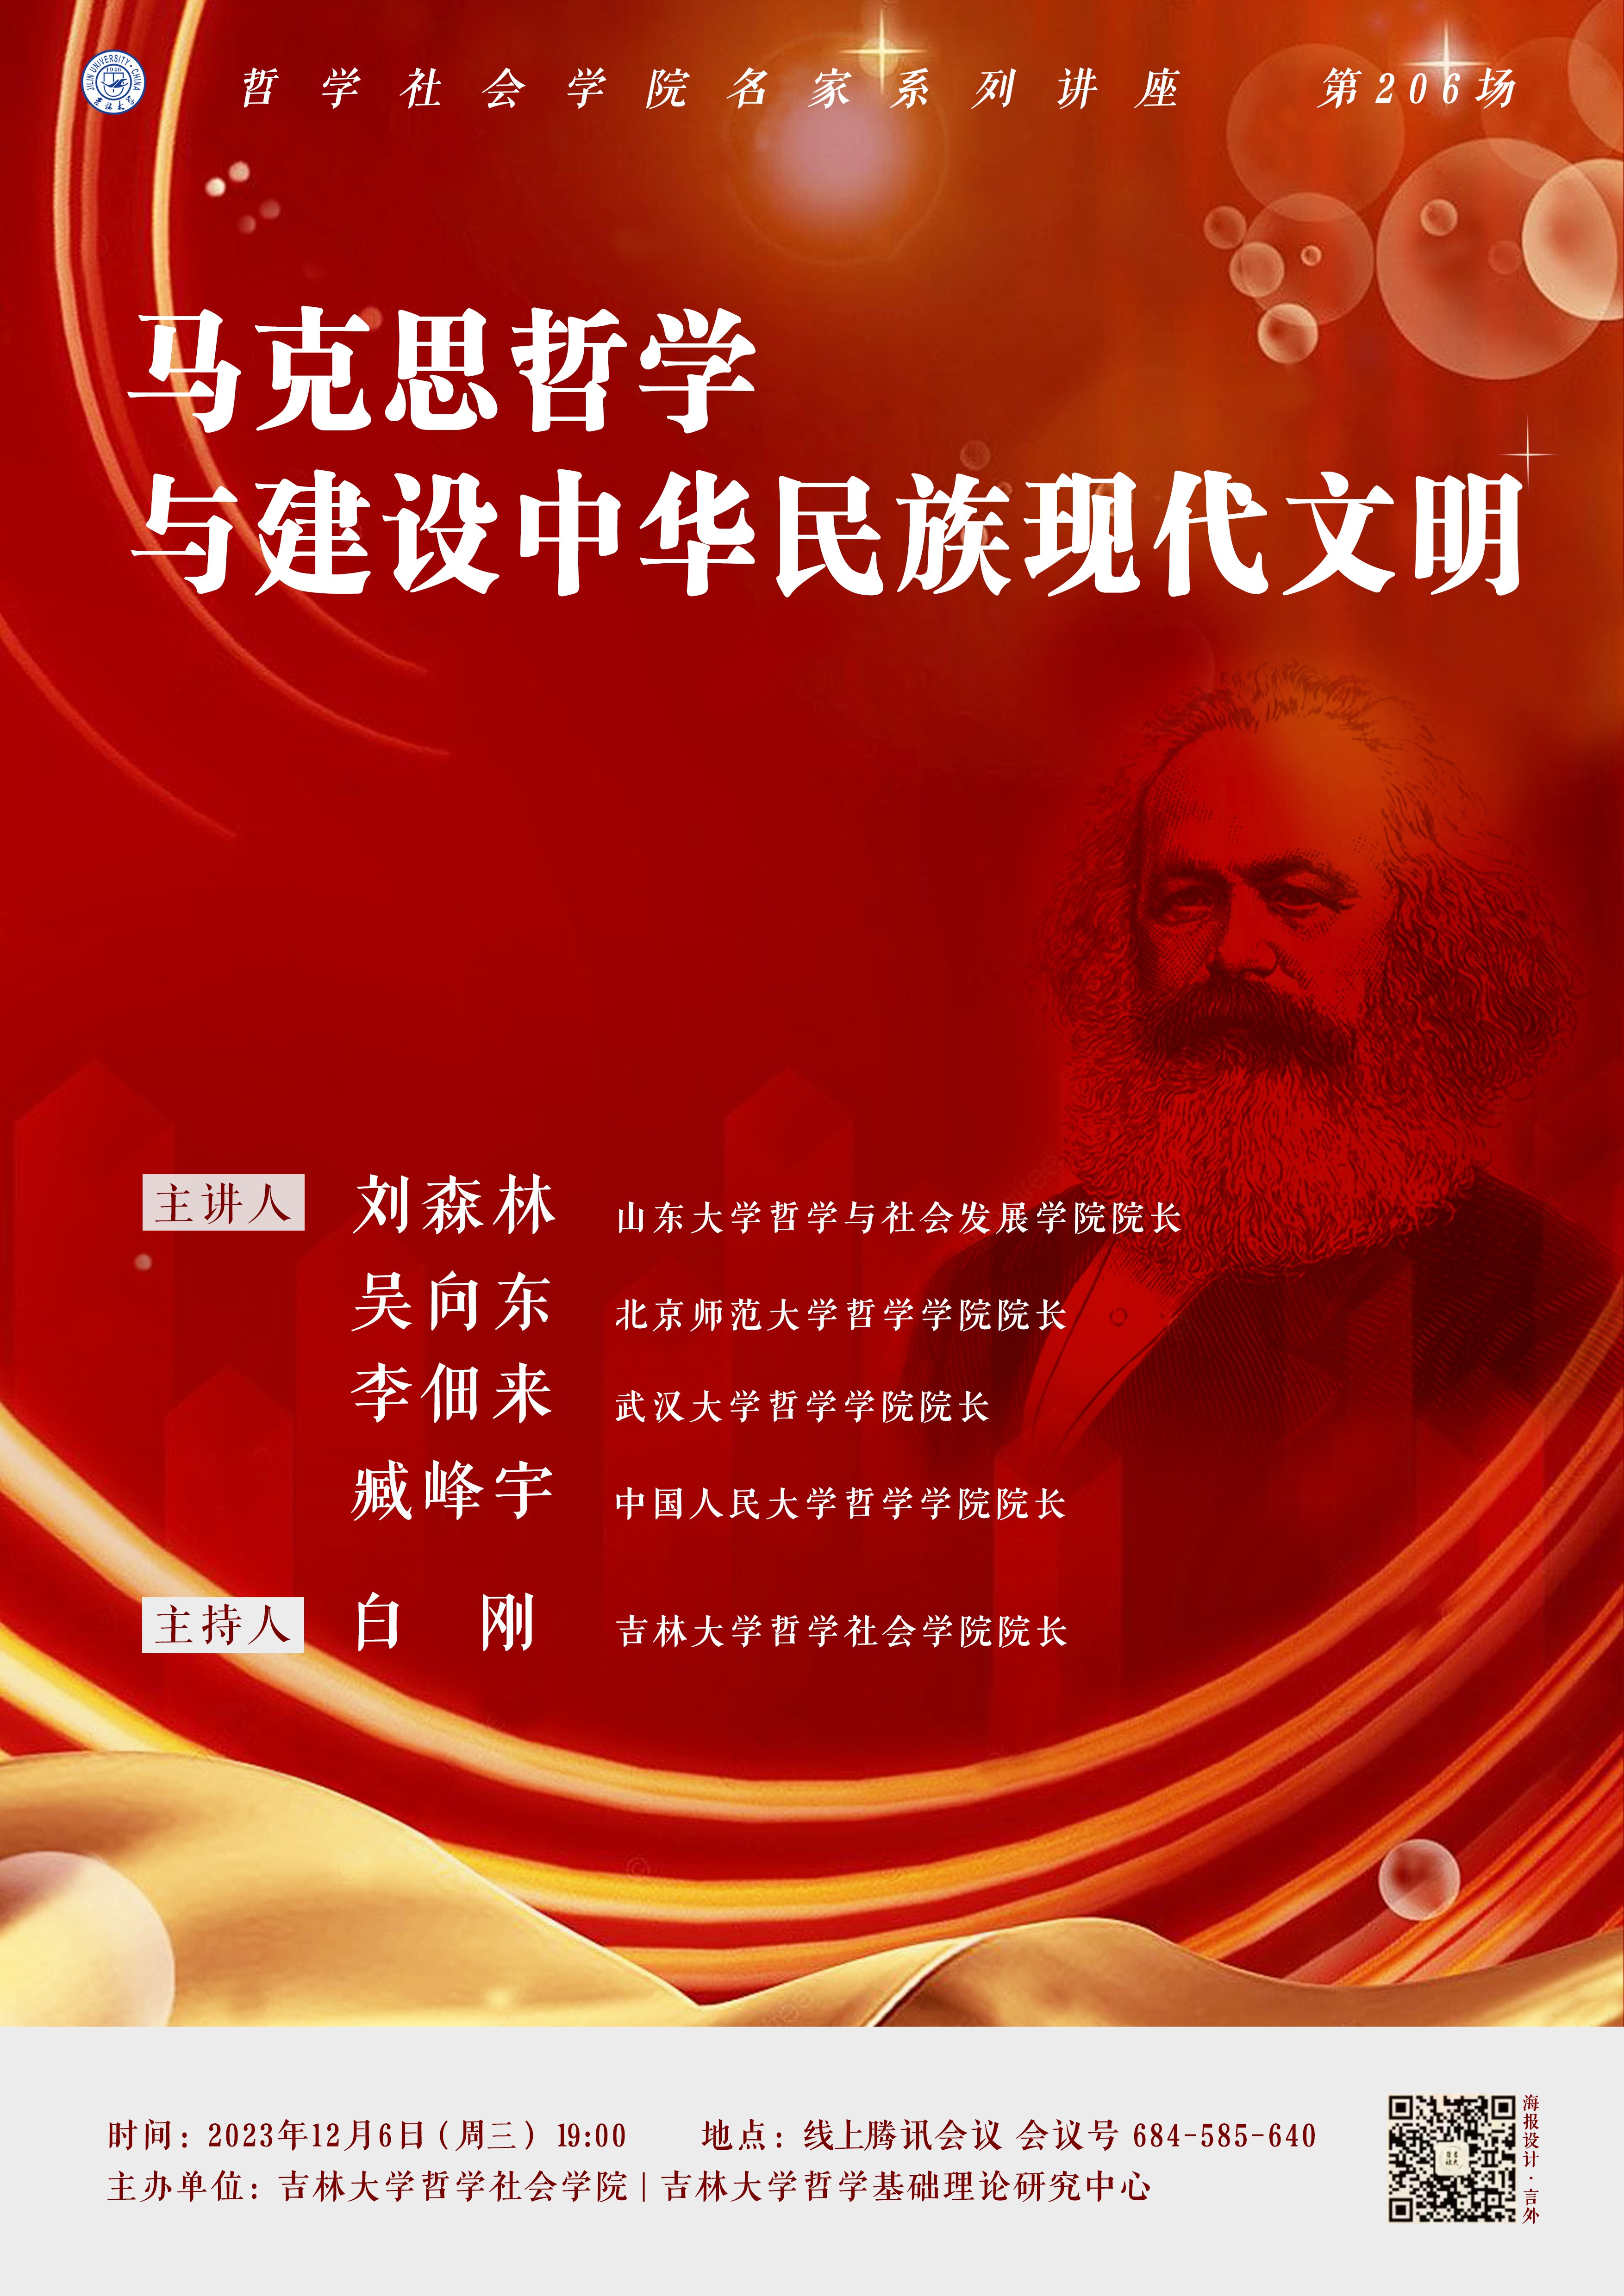 【360环球在线注册名家系列讲座第206场】马克思哲学与建设中华民族现代文明